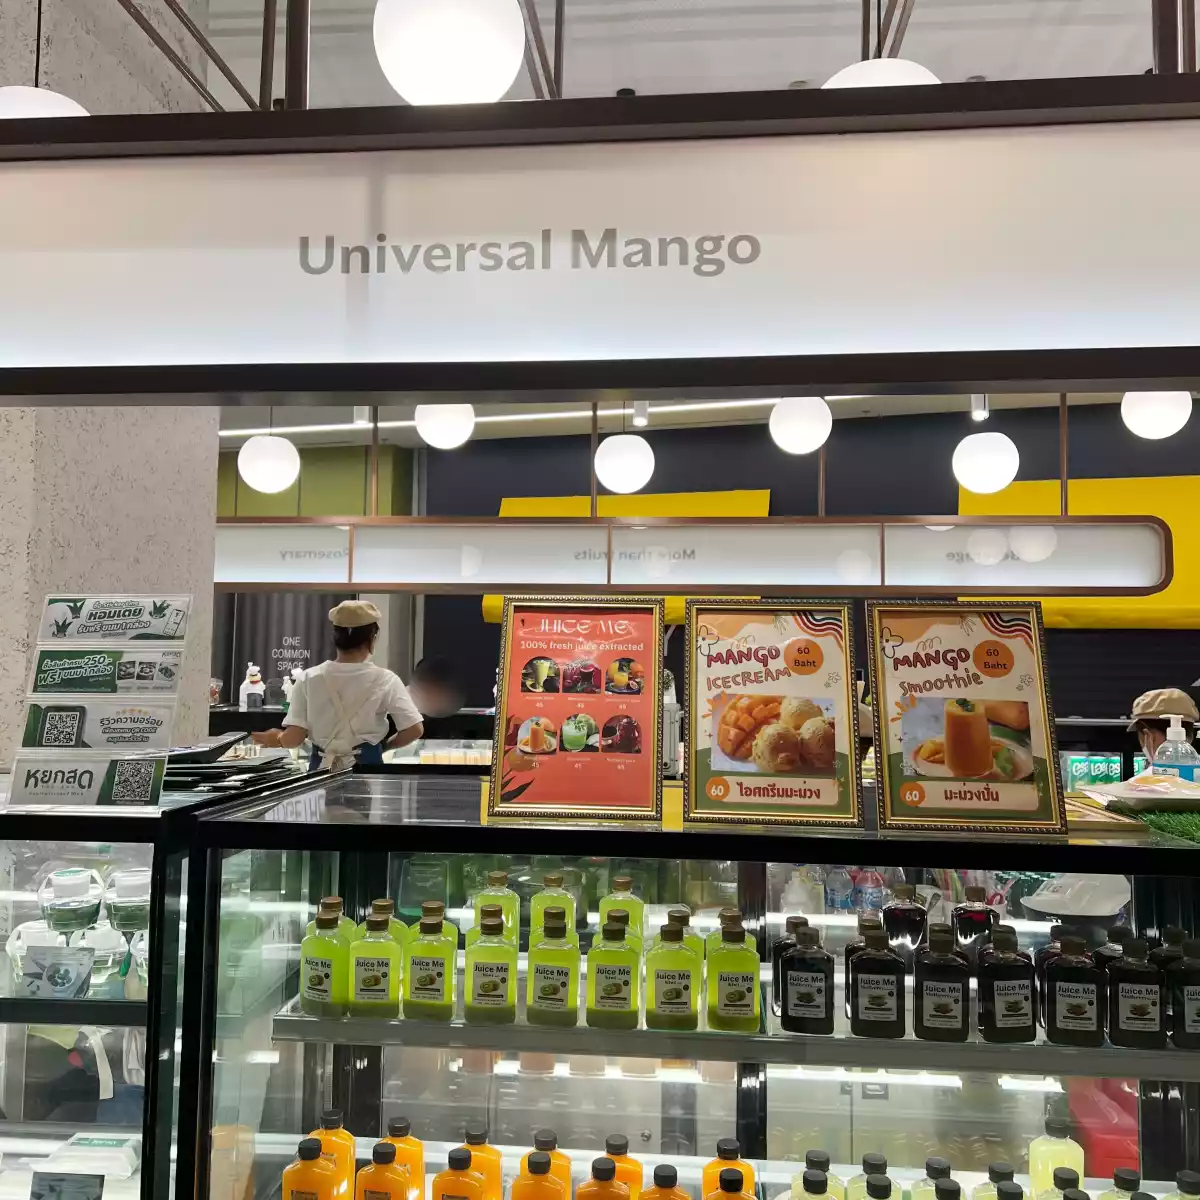 Universal Mango